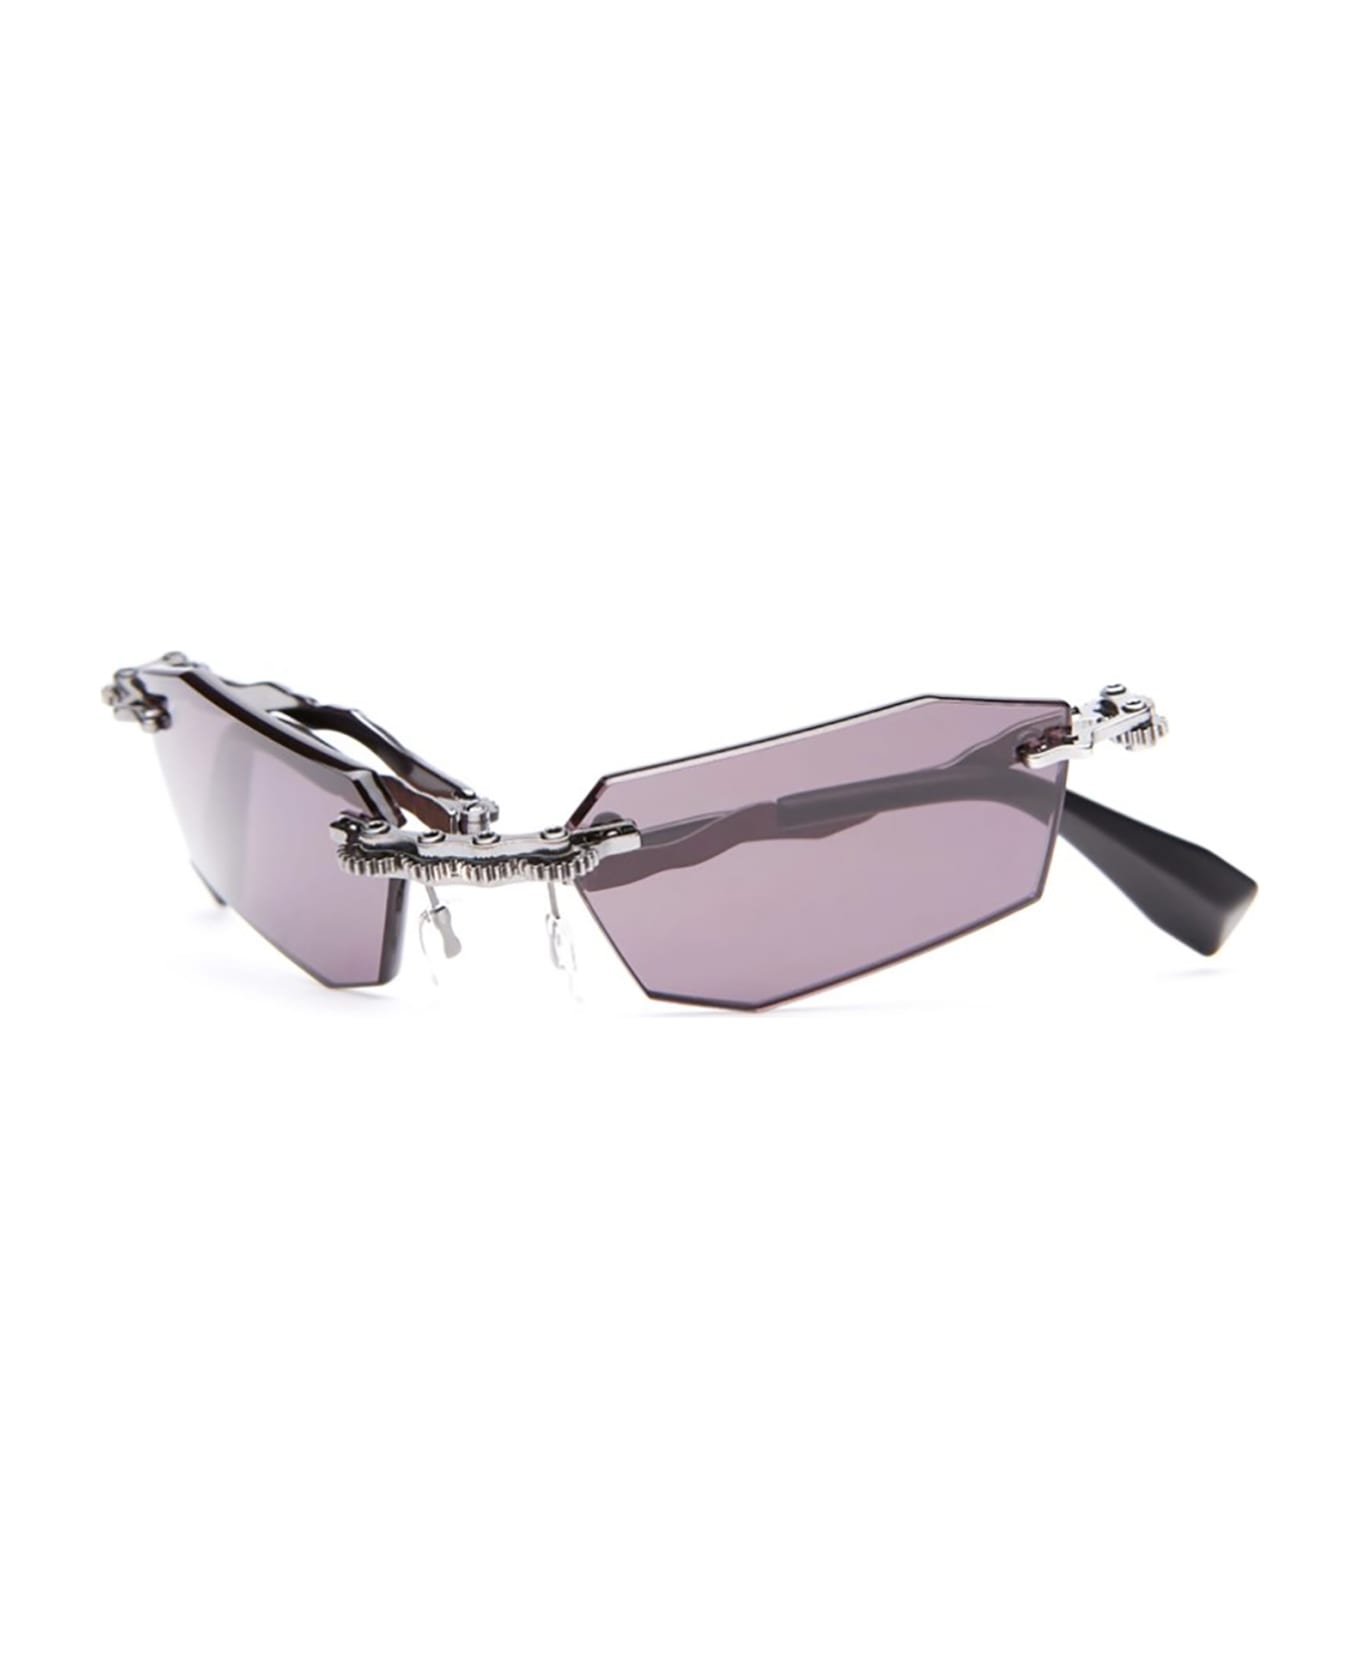 Kuboraum H40 Sunglasses - Bb Grey